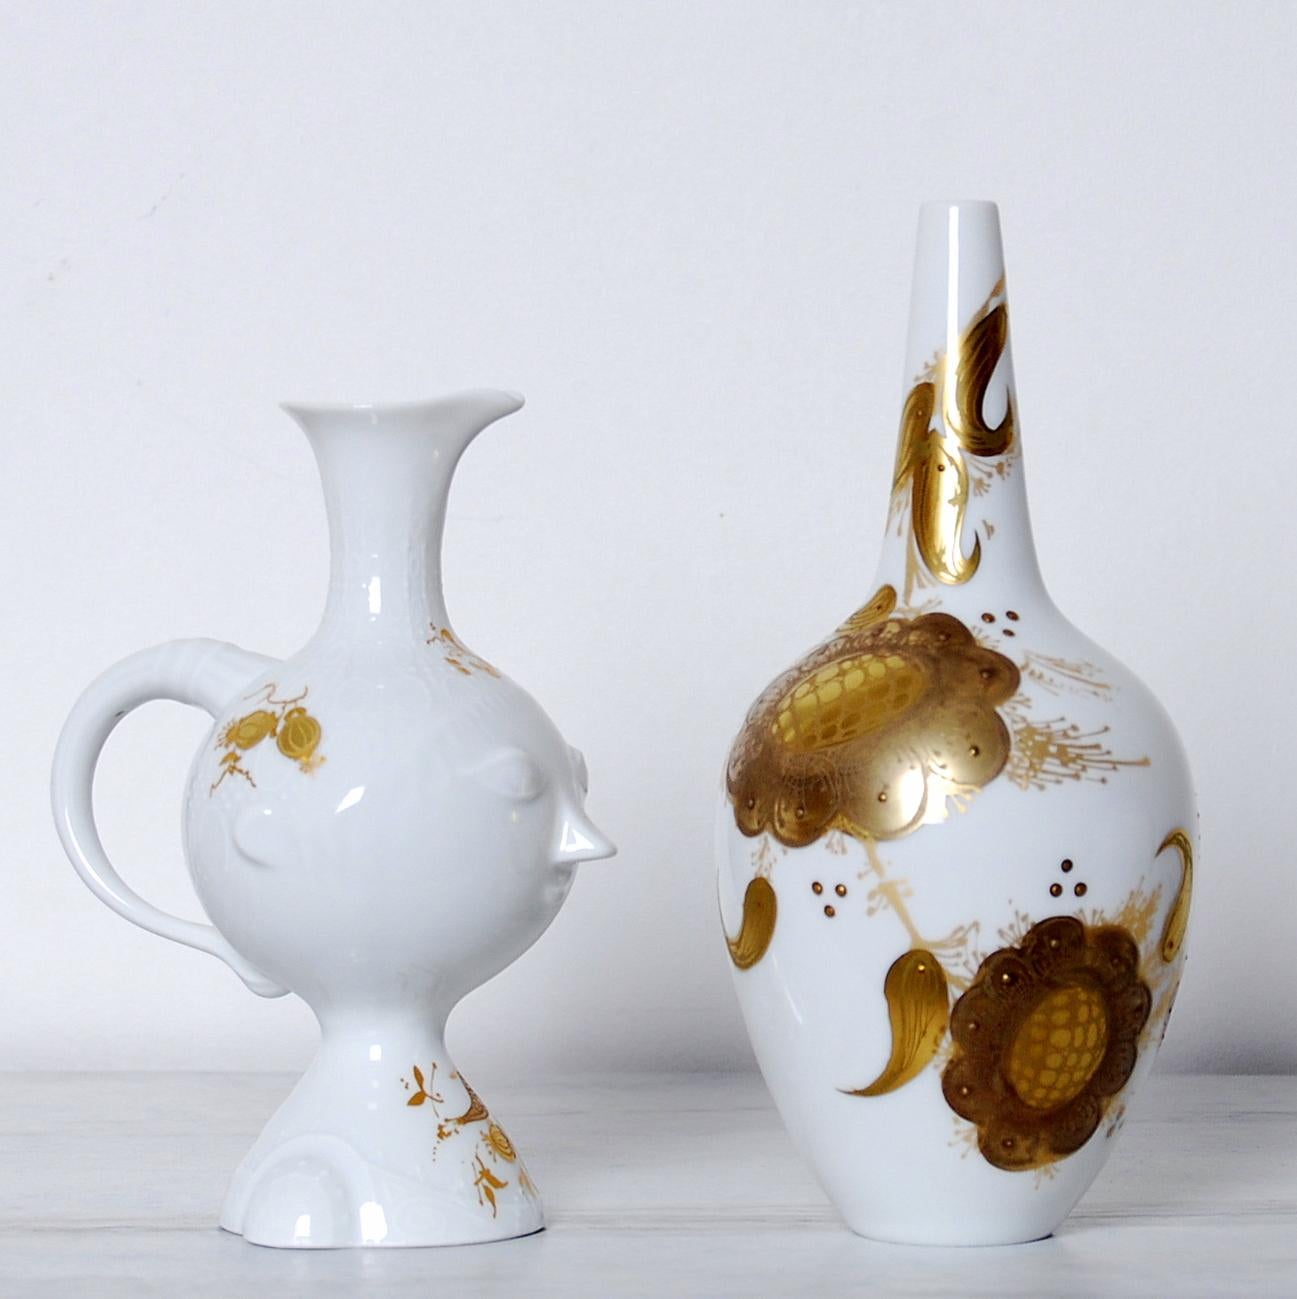 Romance-Muster, bestehend aus Kelch und Vase, von Björn Wiinblad für Rosenthal. Porzellan mit 24-karätigem Golddekor. Sehr guter Zustand.
Maße der Schale: 16 x 10 cm, Vase 18 x 8 cm.
 